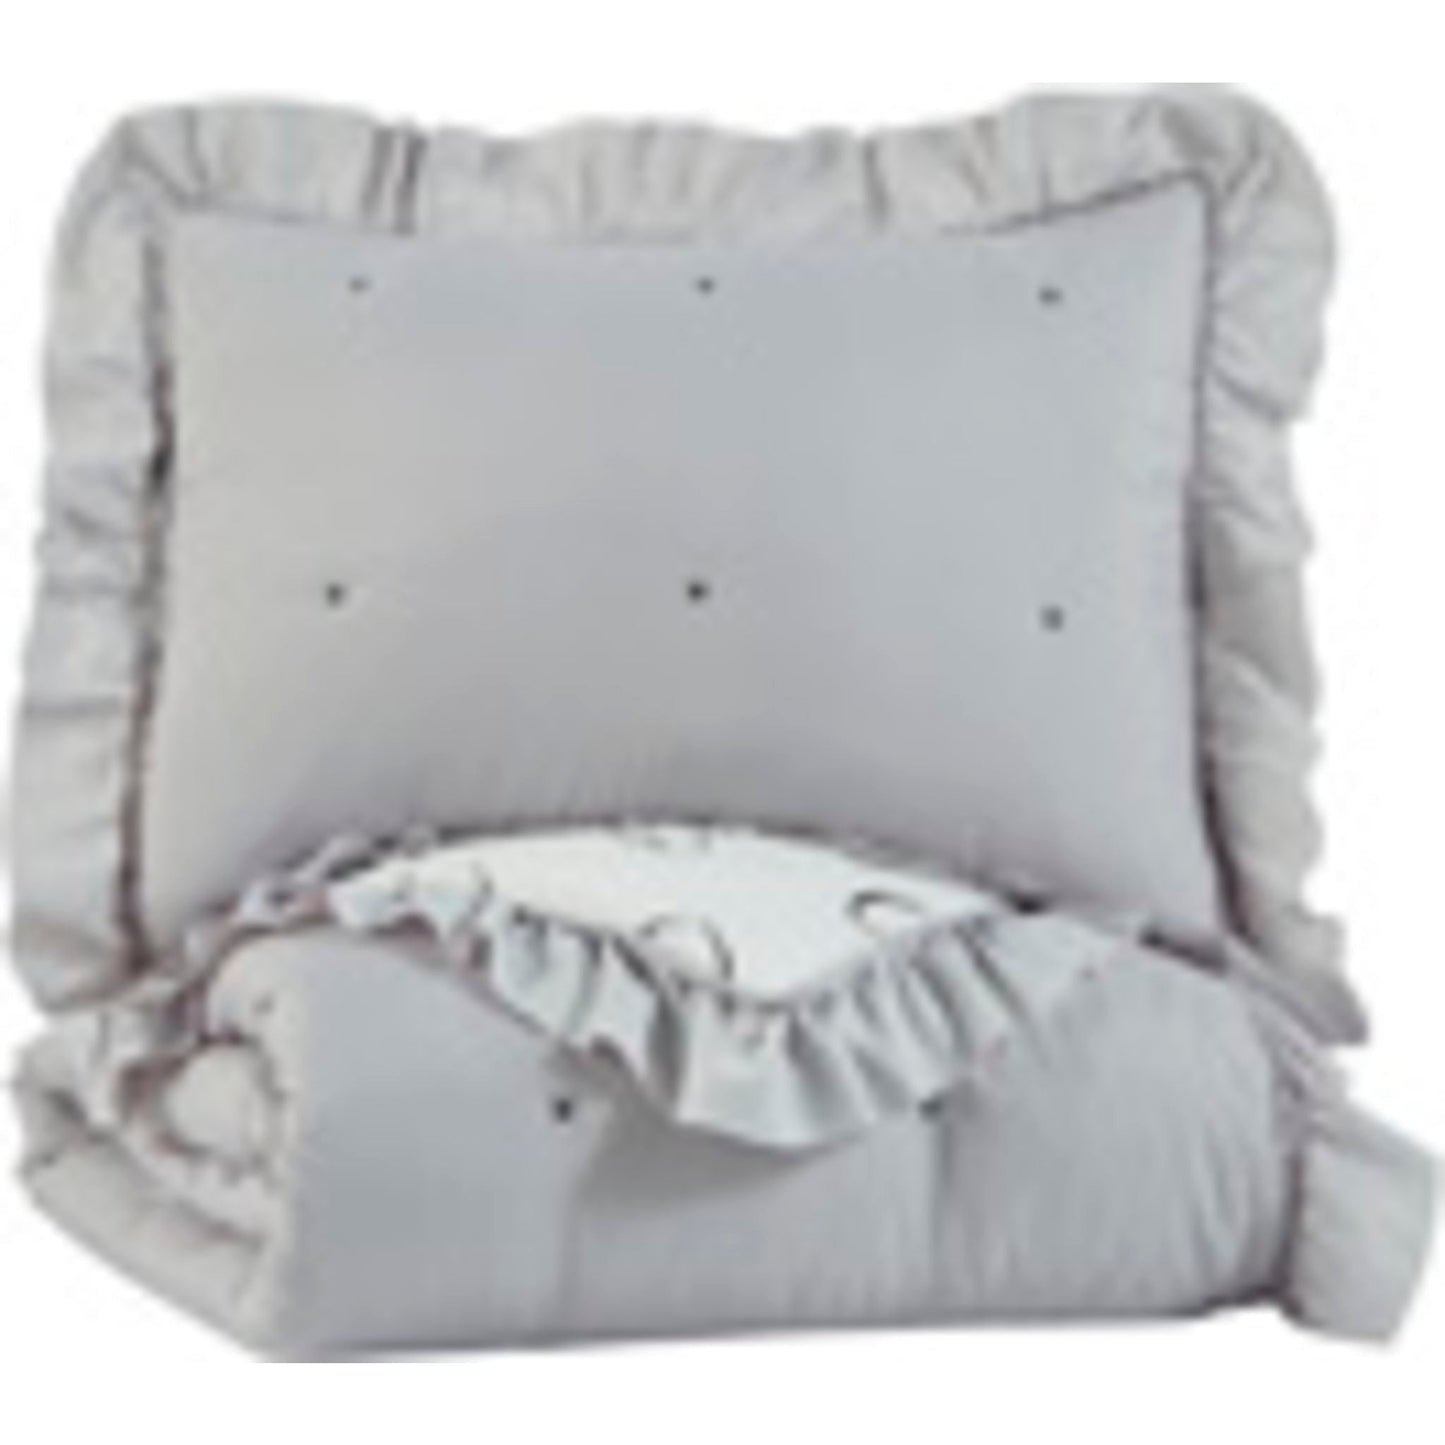 Hartlen Twin Comforter Set